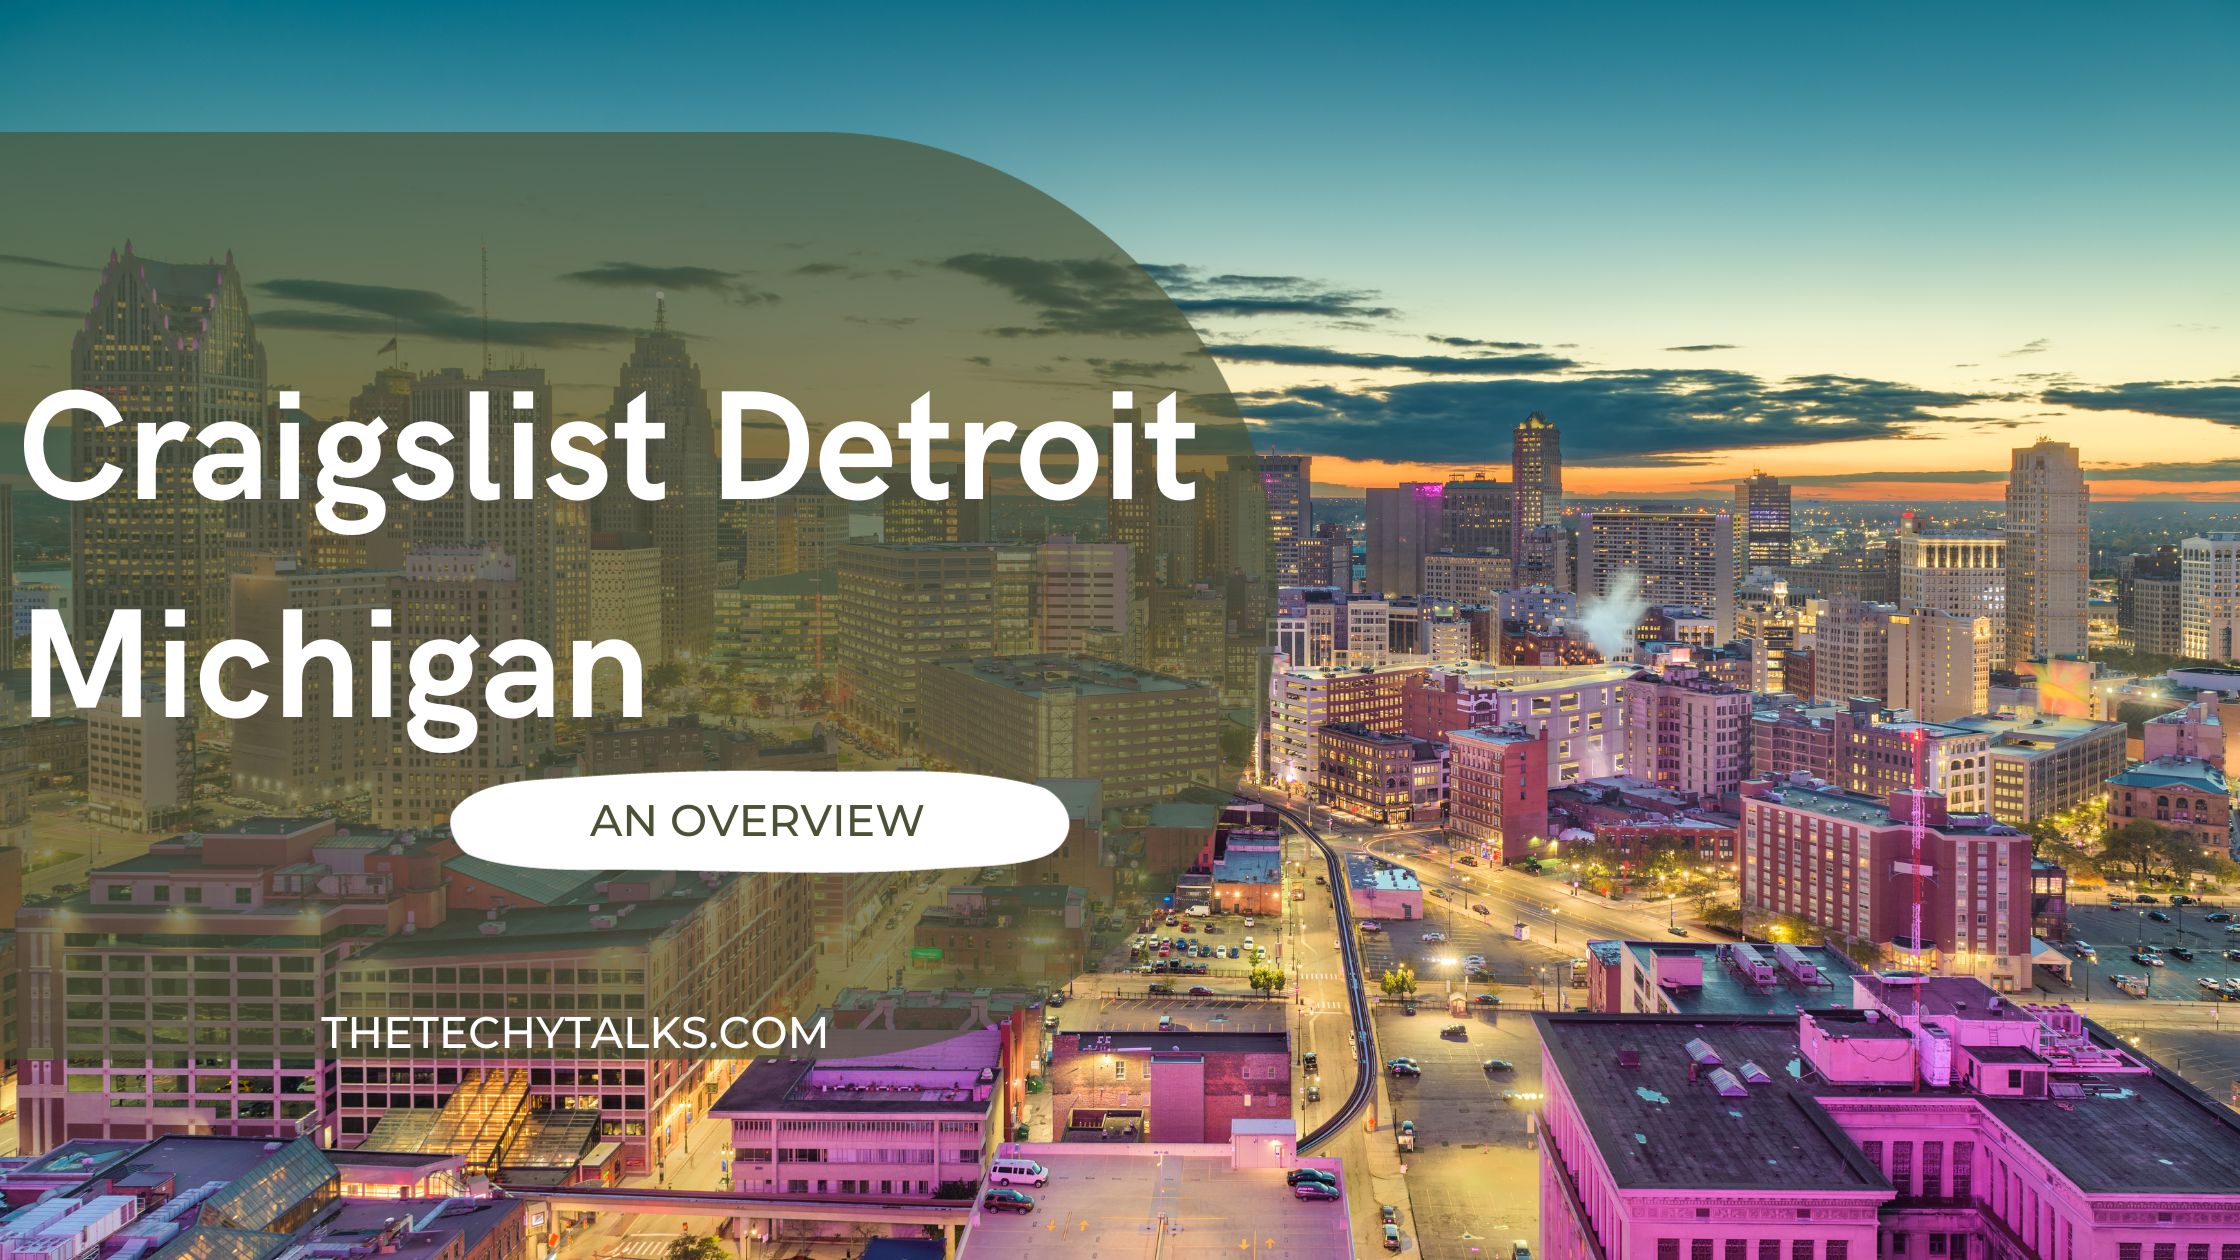 Craigslist Detroit, Michigan: An Overview